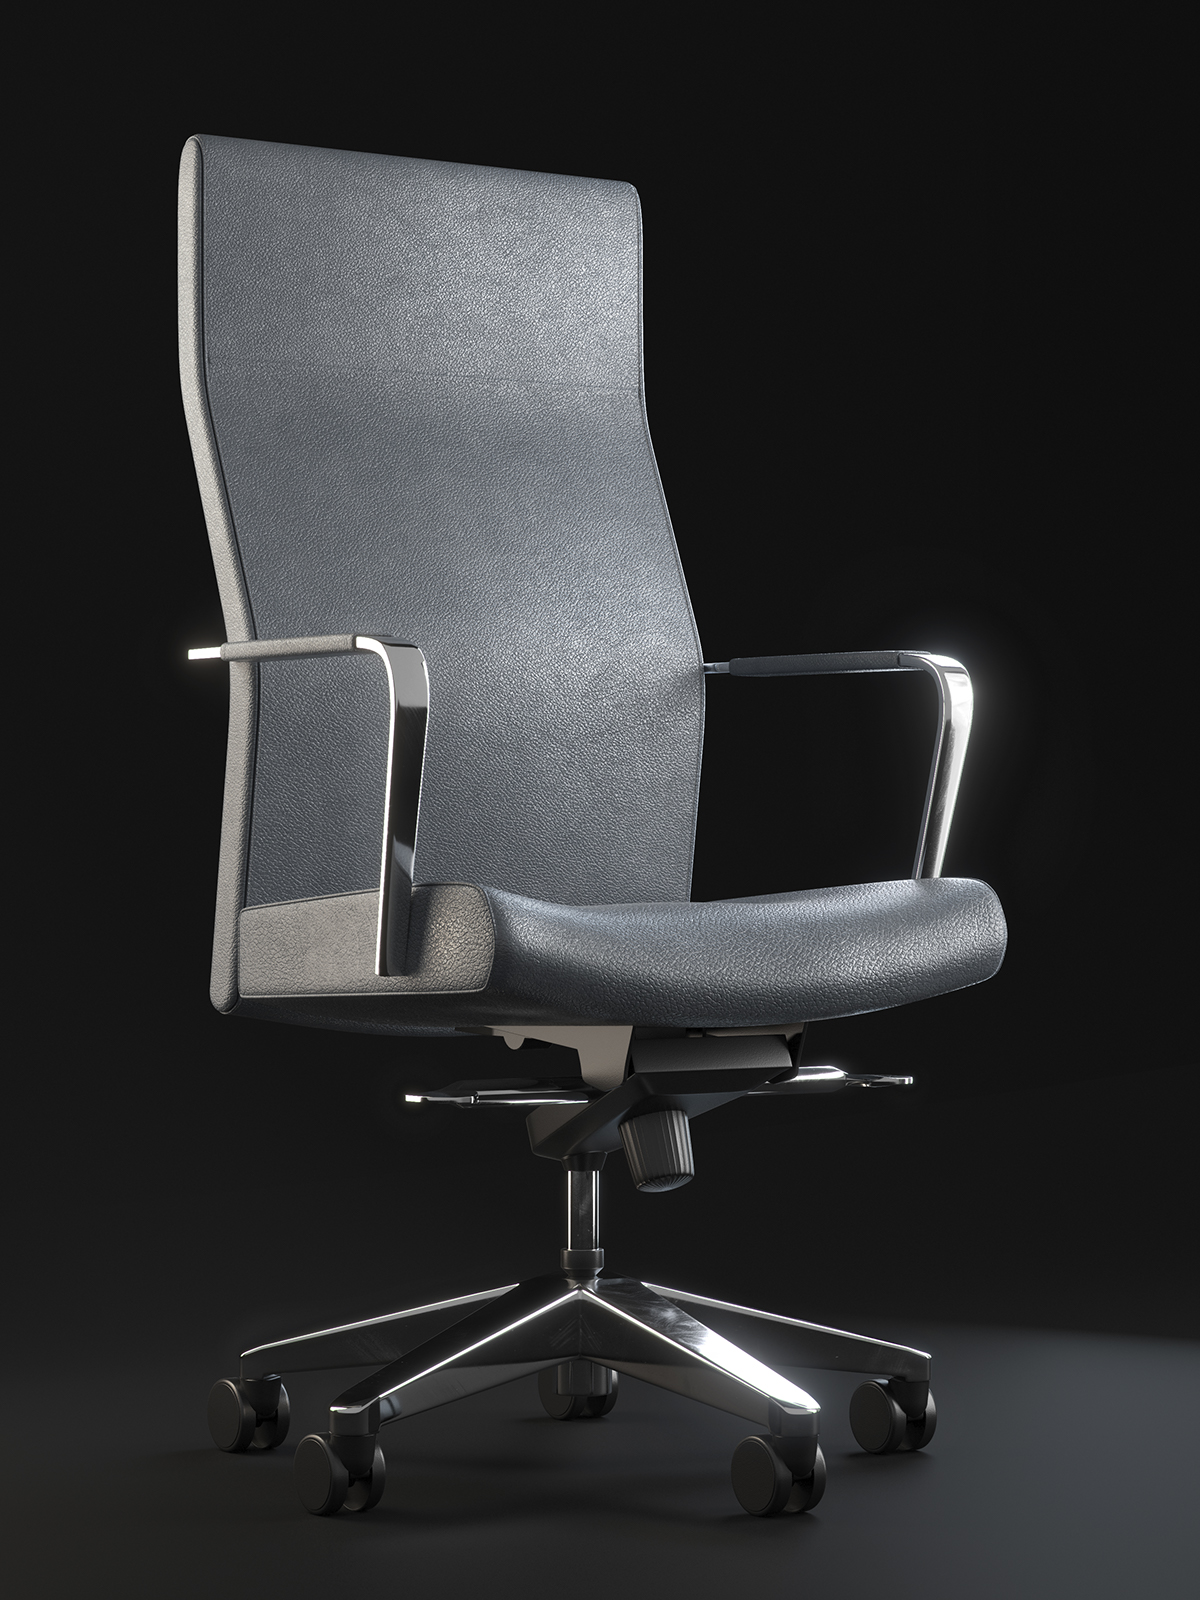 Keilhauer Vanilla Chair On Behance